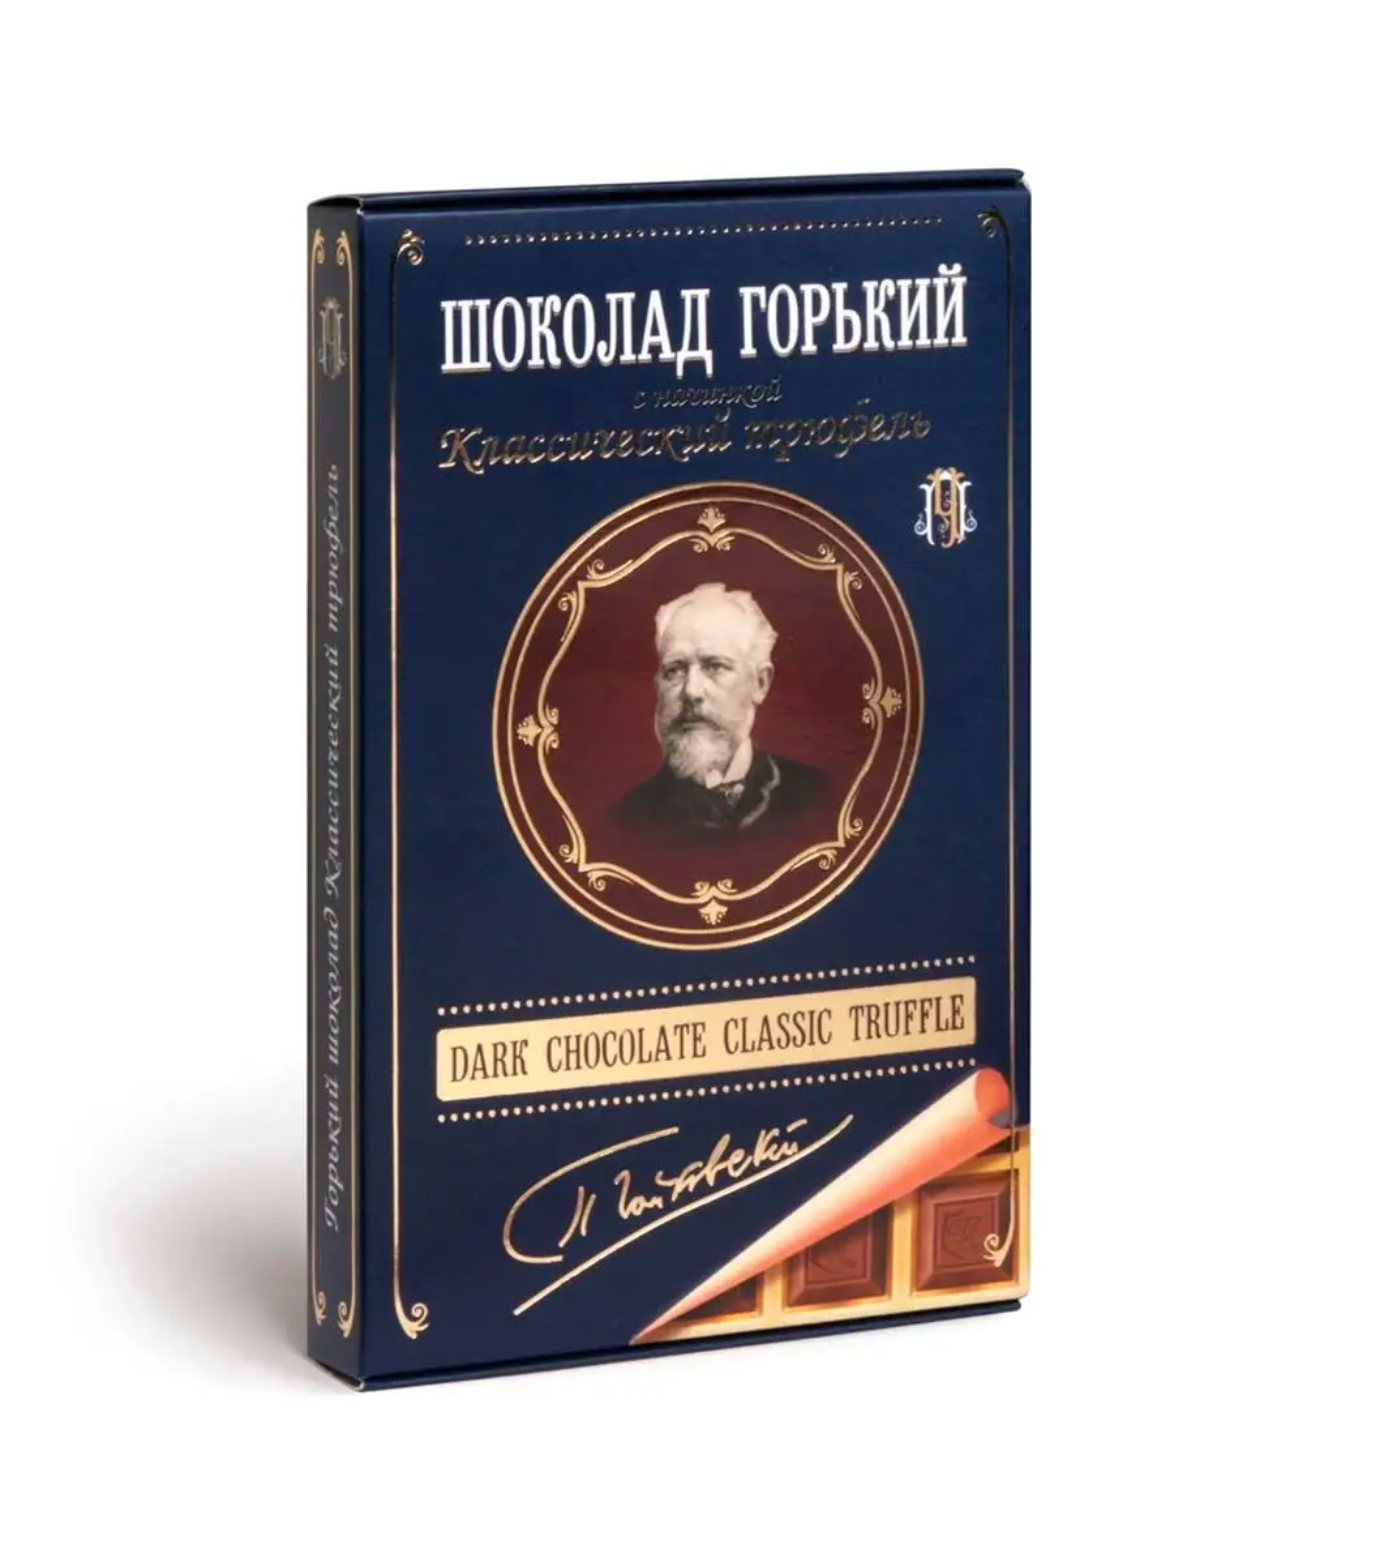 Шоколад "Чайковский" горький с начинкой Классический трюфель 112г/Томер